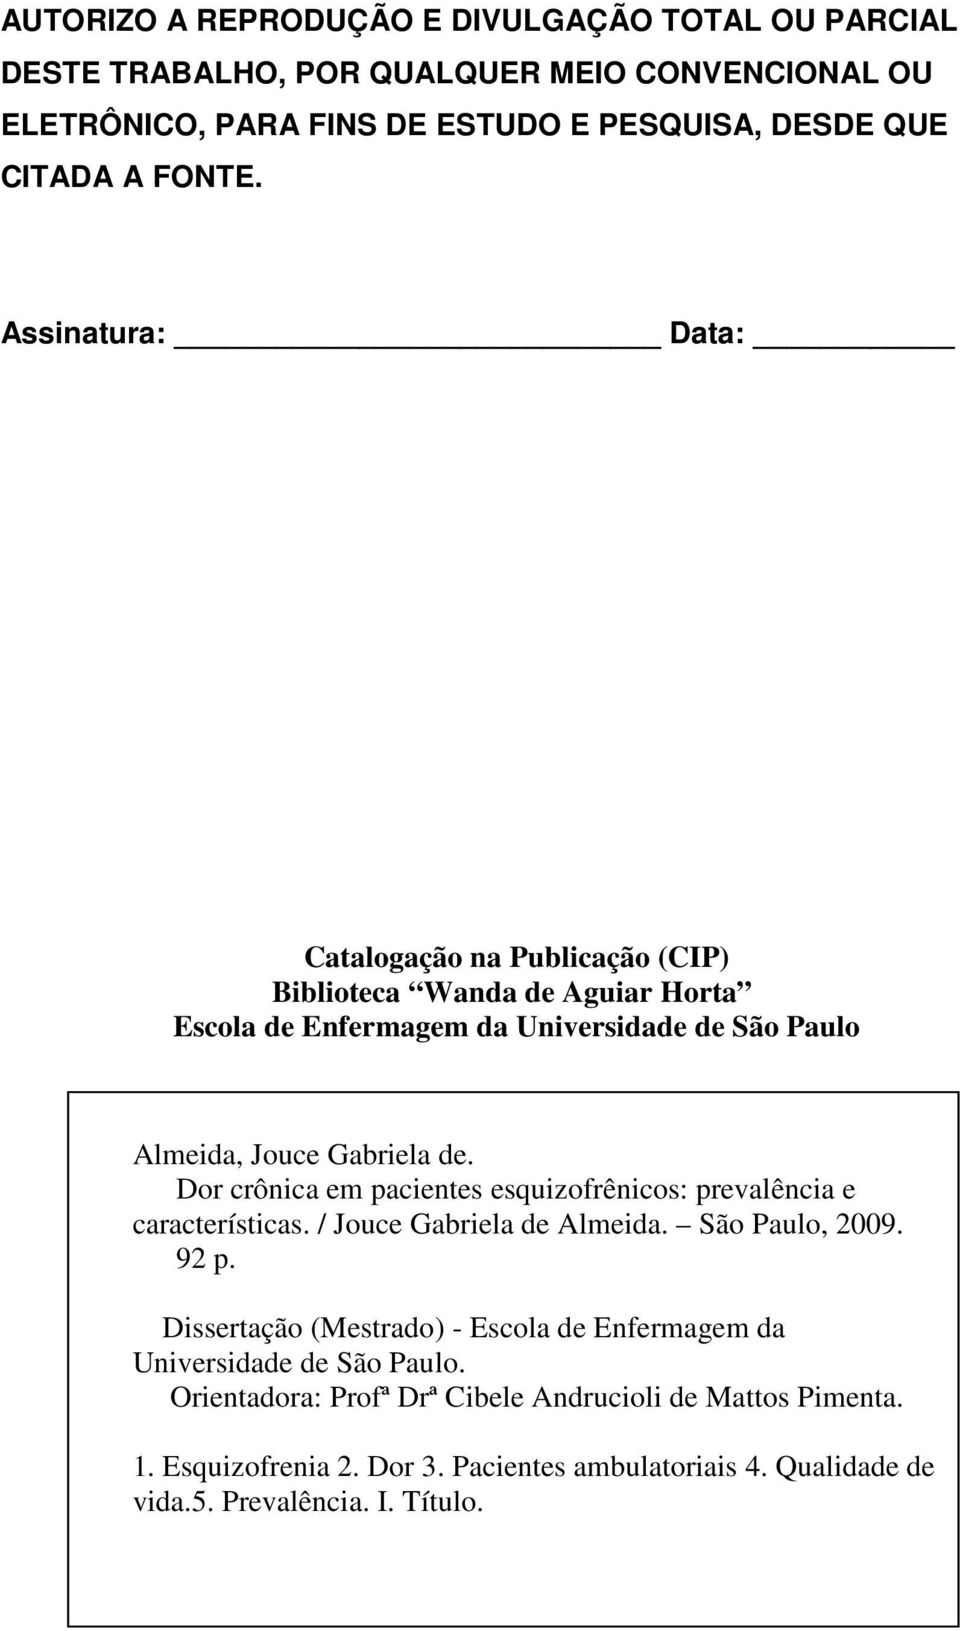 Dor crônica em pacientes esquizofrênicos: prevalência e características. / Jouce Gabriela de Almeida. São Paulo, 2009. 92 p.